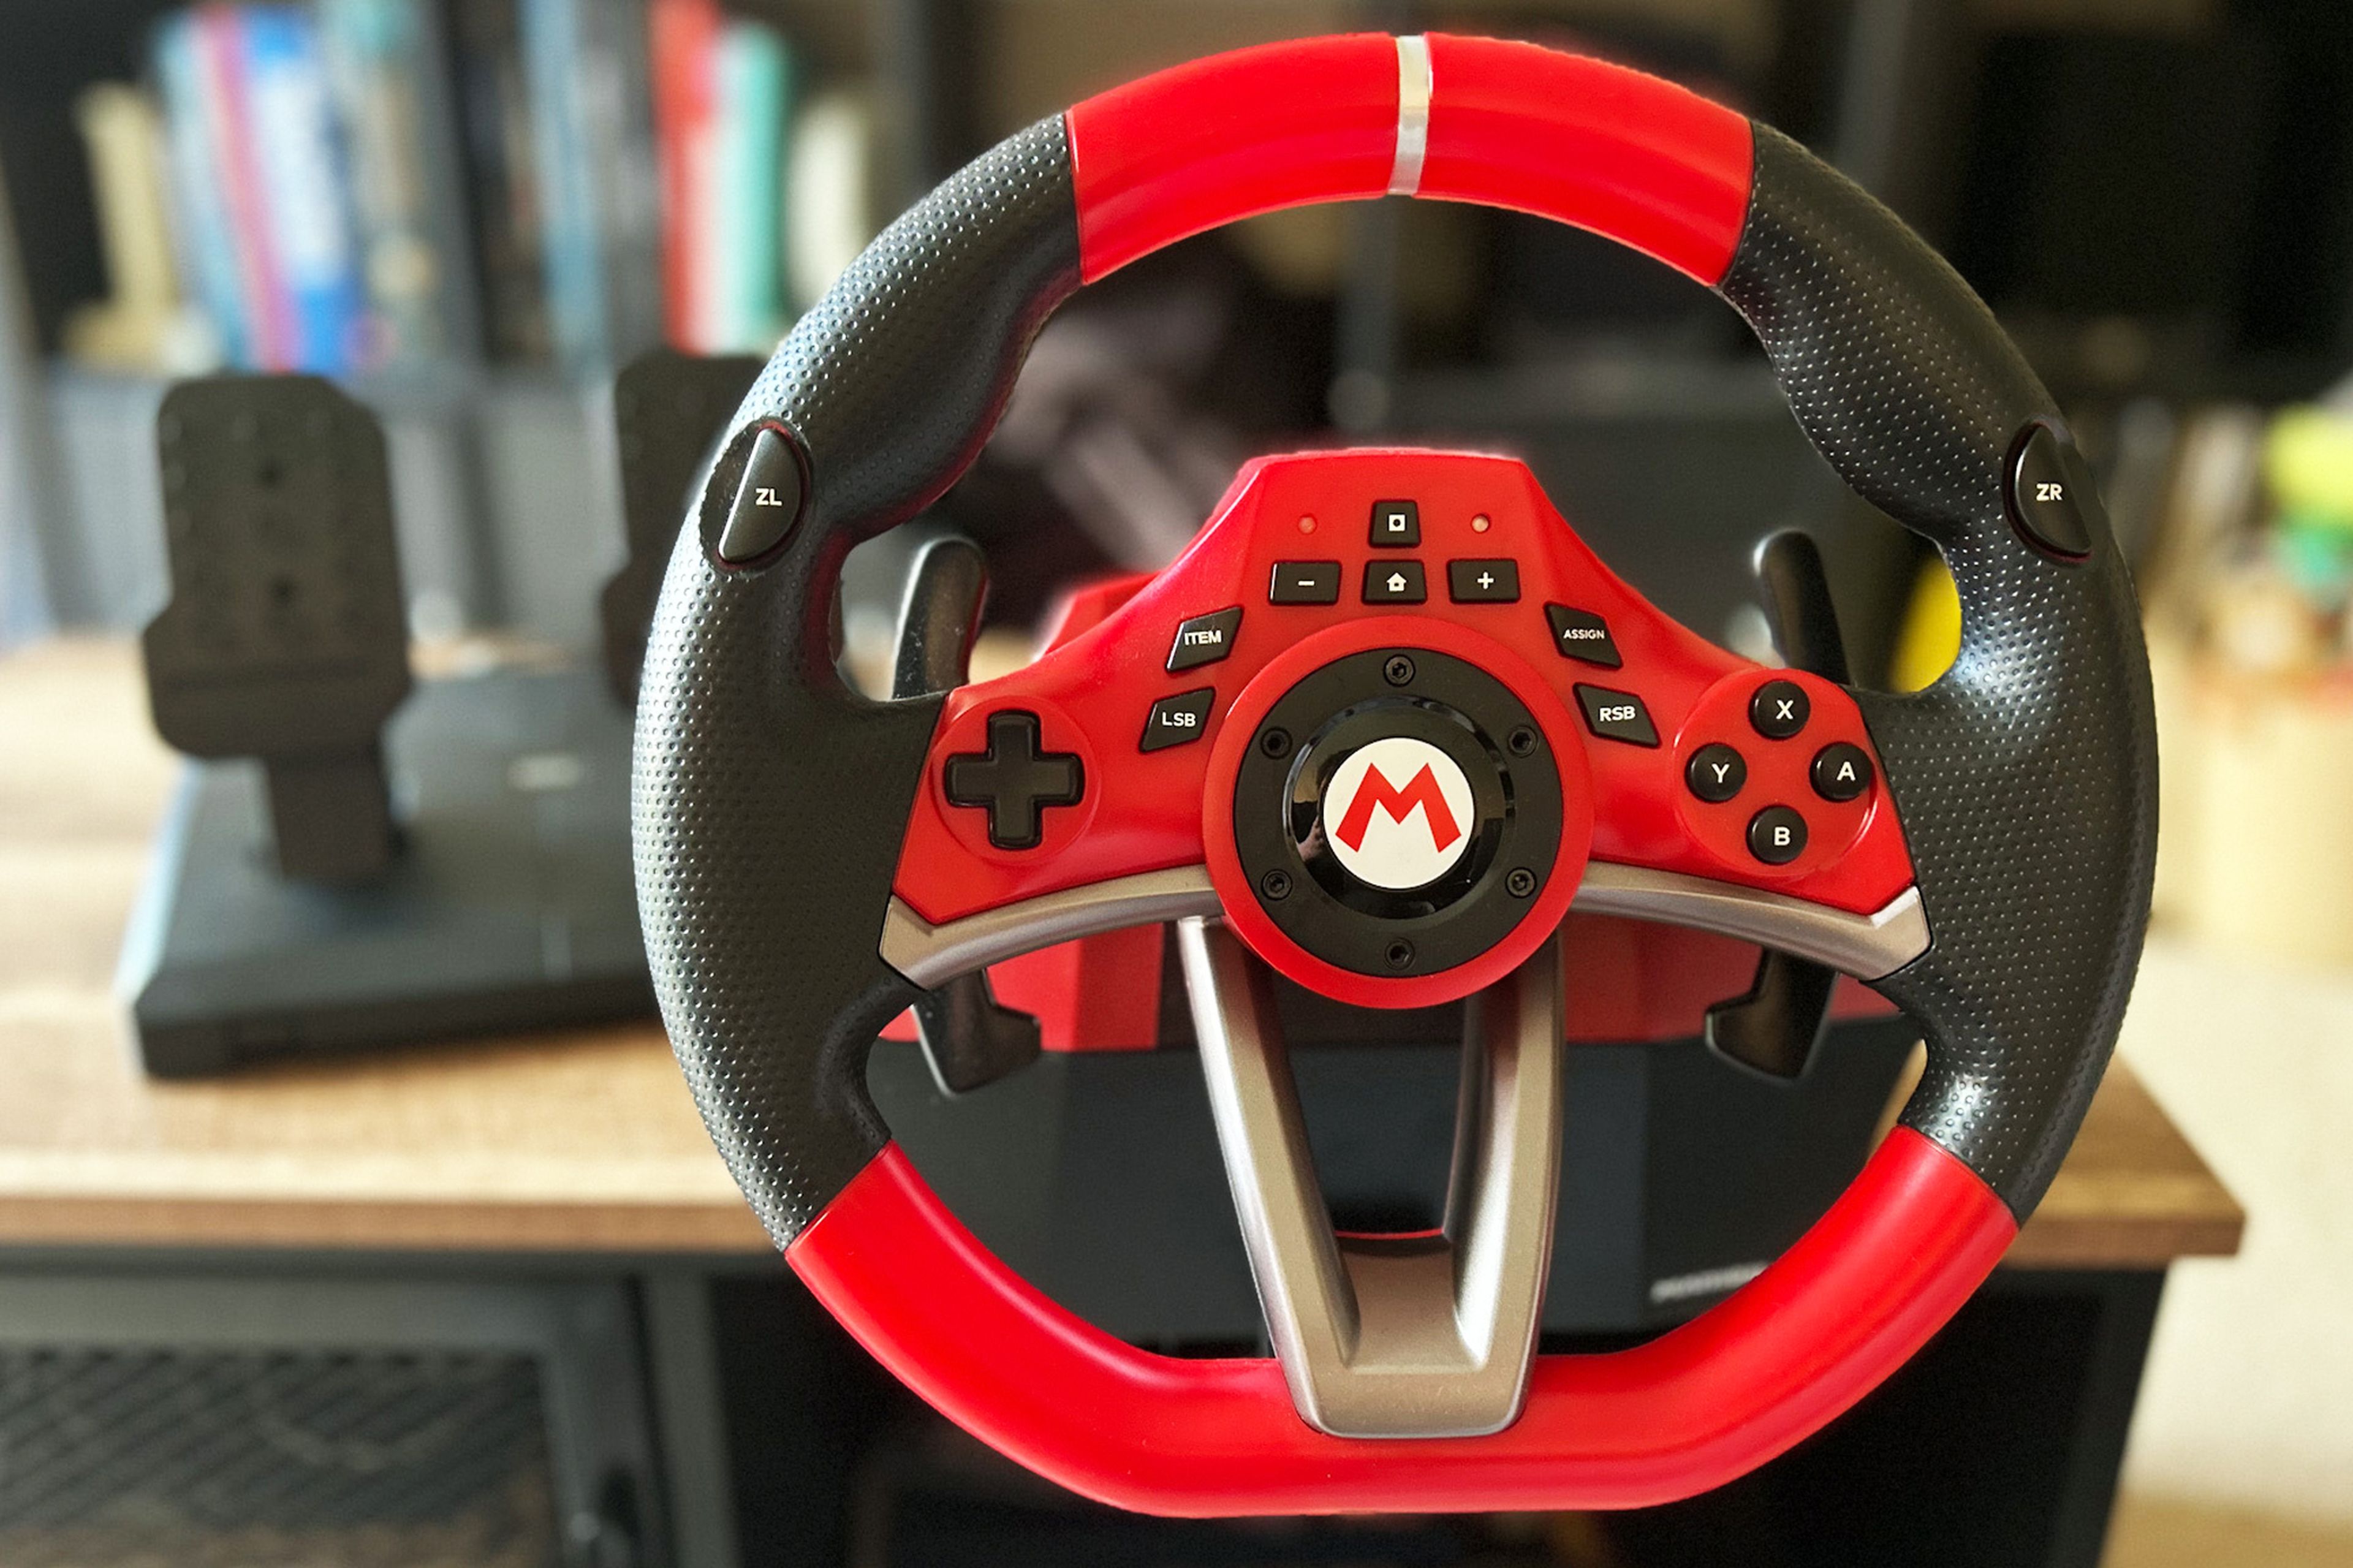 HORI Mario Kart Racing Wheel Pro Deluxe